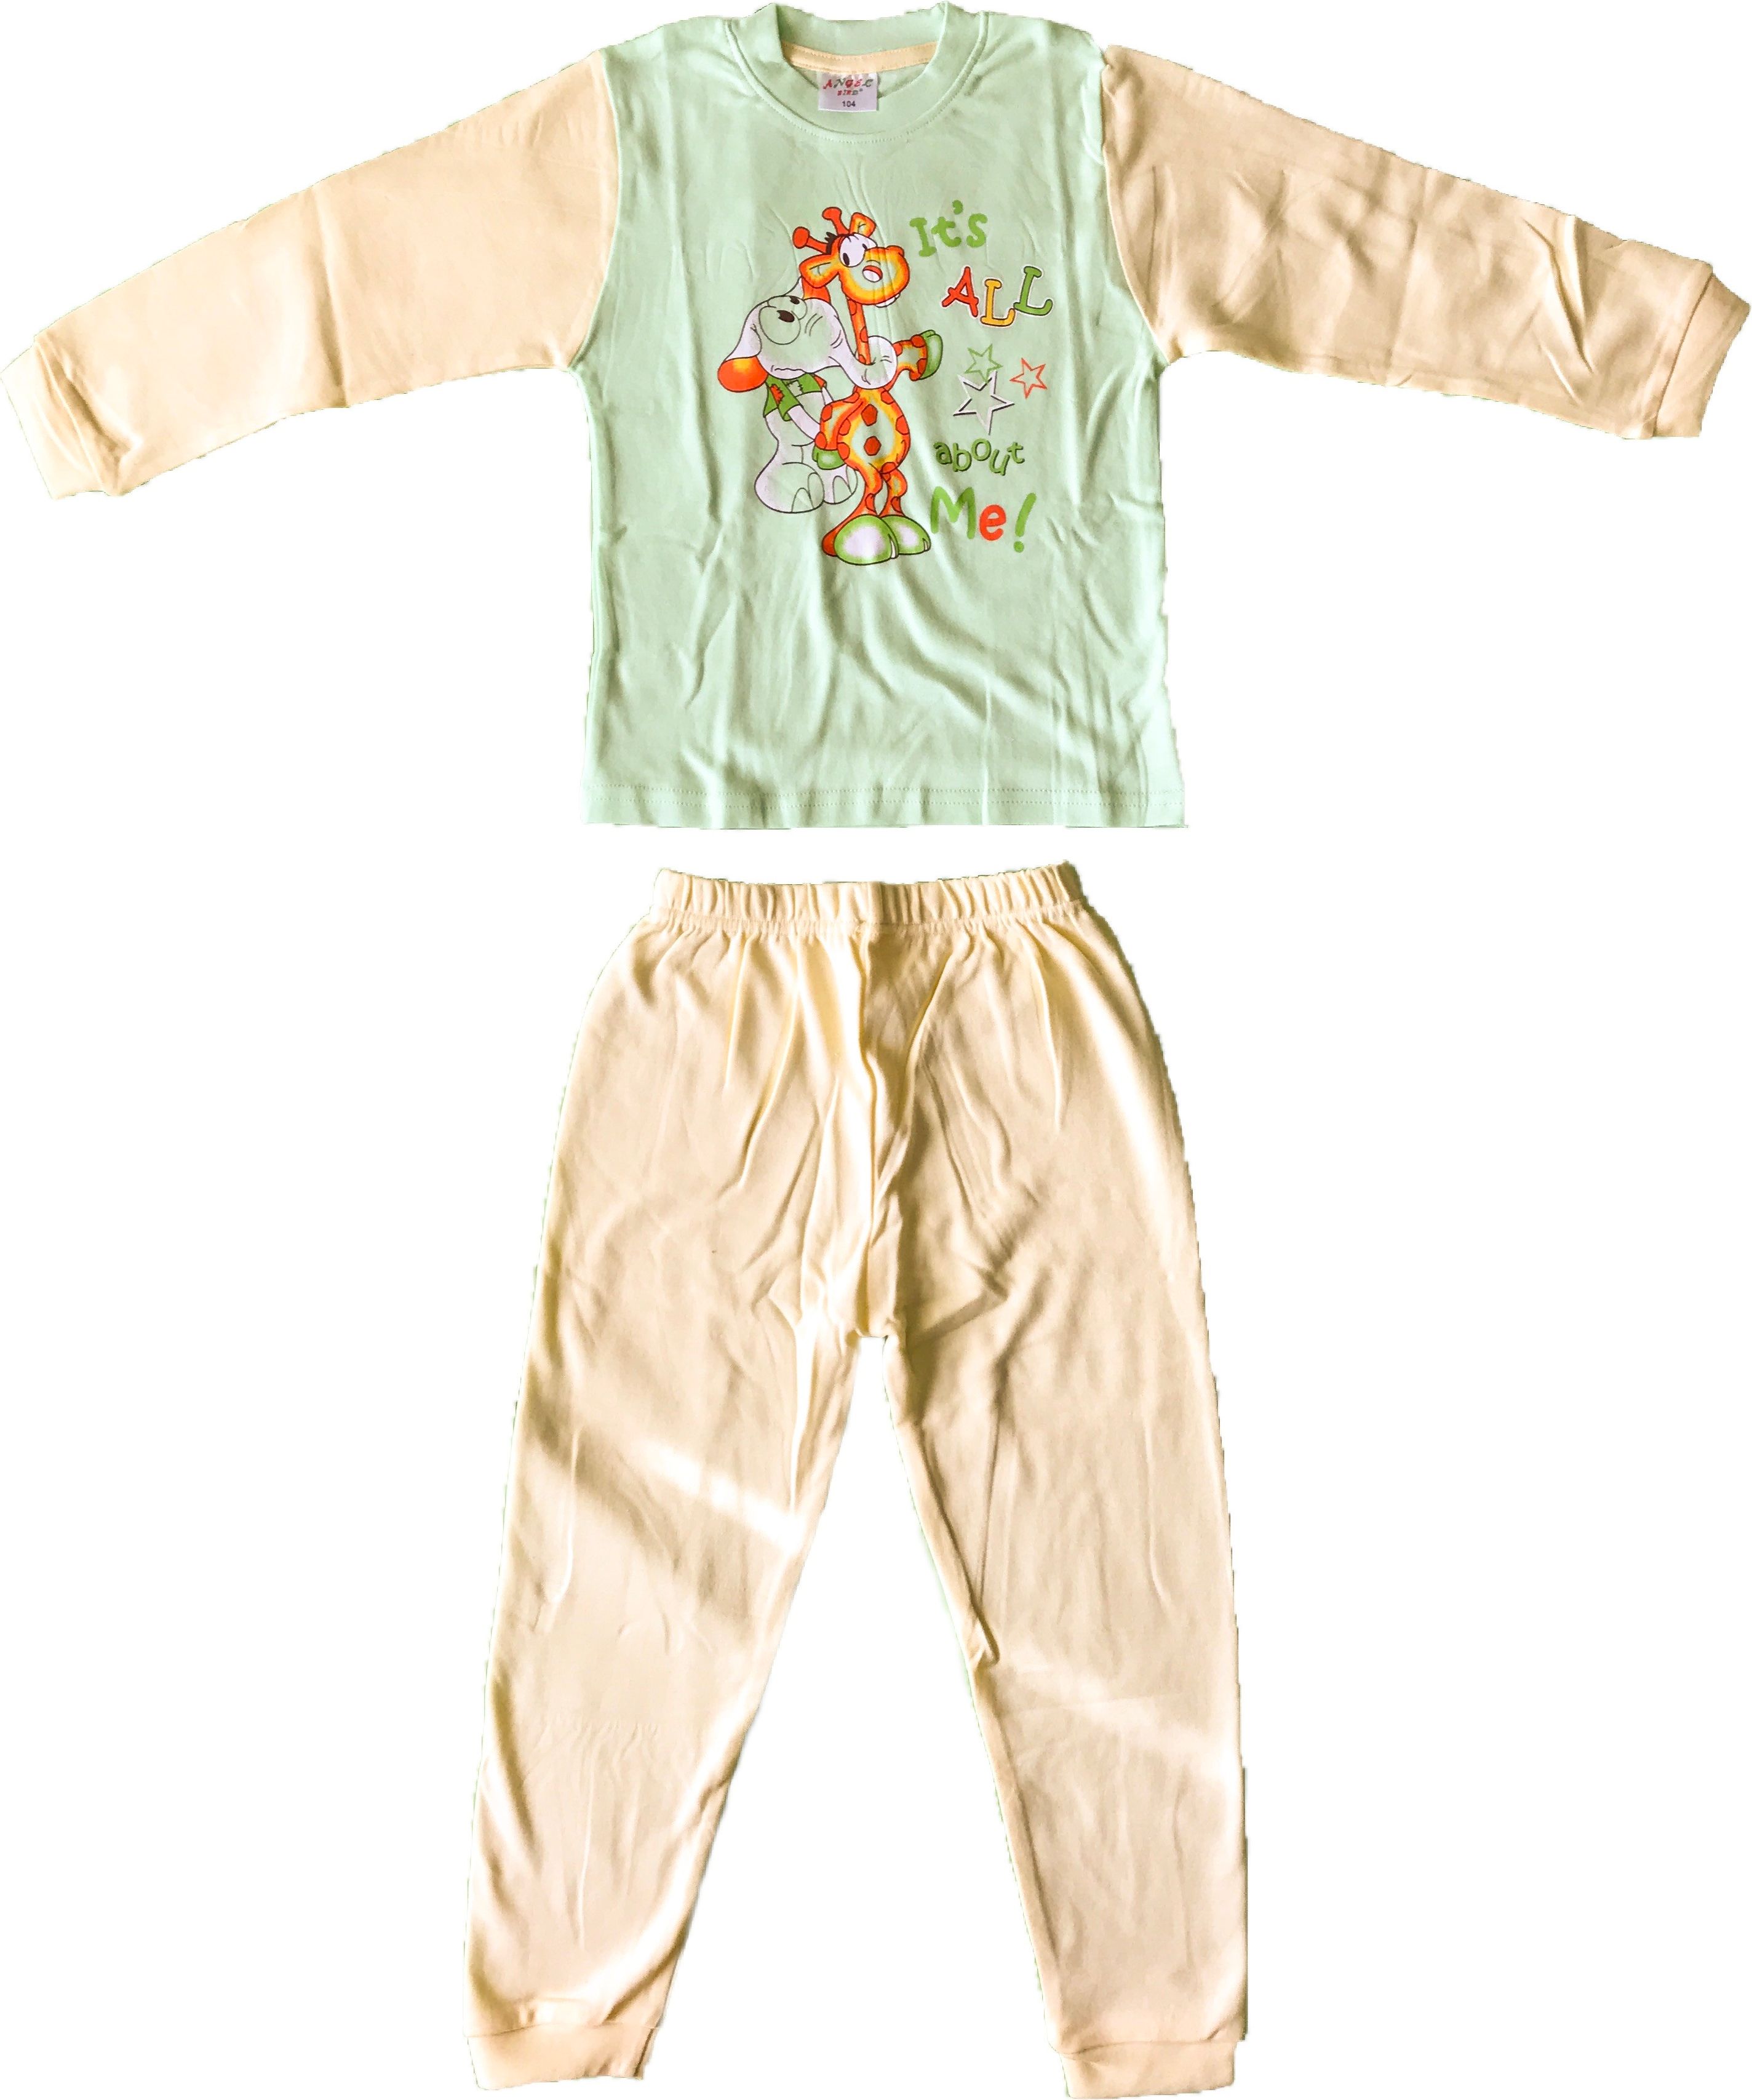 Pyžamo dětské s žirafou - zelené 80 (9-12m.) - obrázek 1